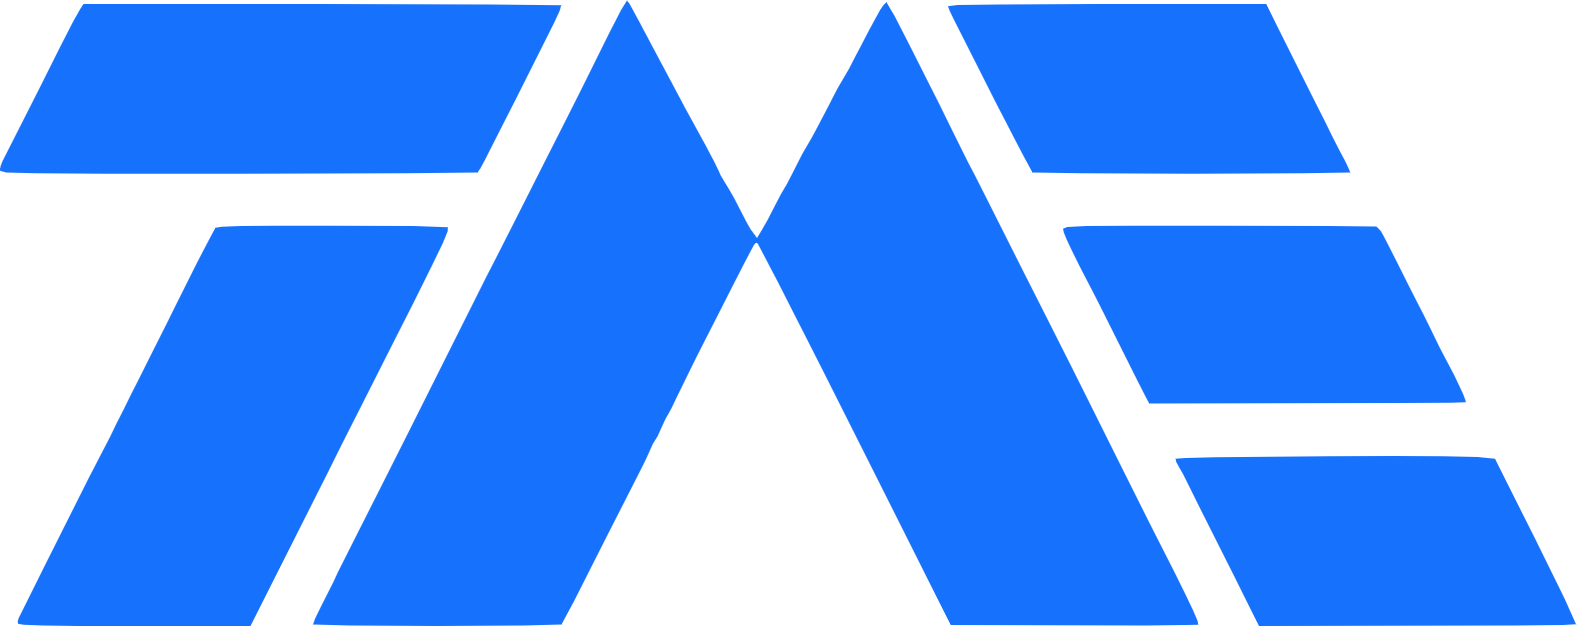 Tencent Music Logo (transparentes PNG)